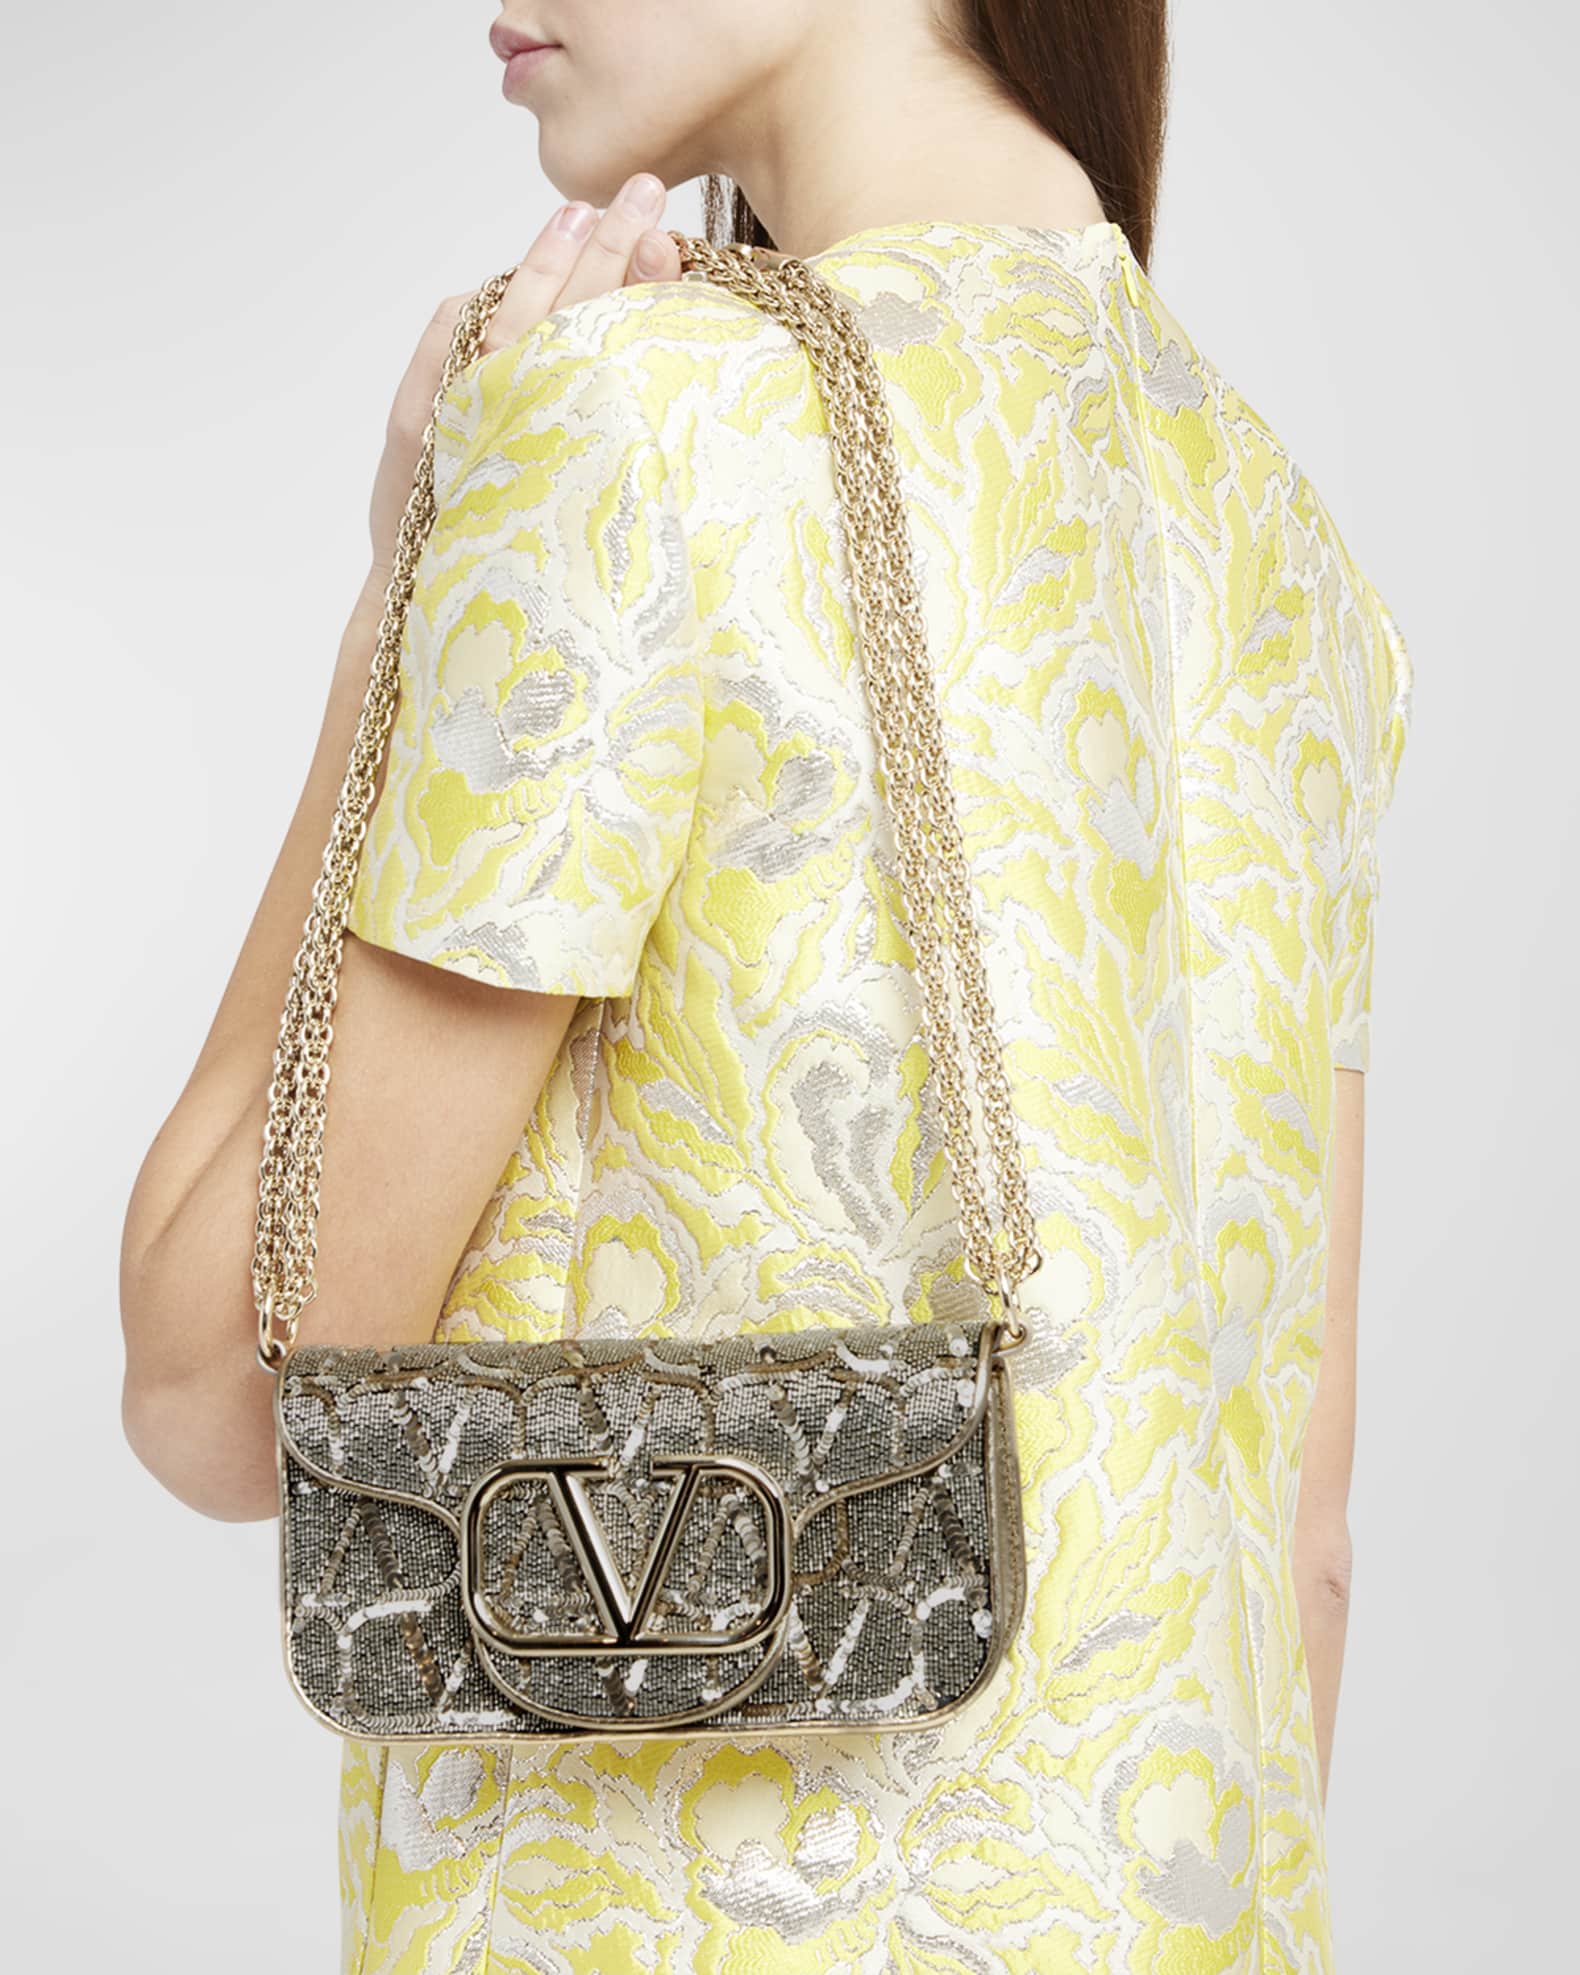 Women's Locò Sequins Bag by Valentino Garavani